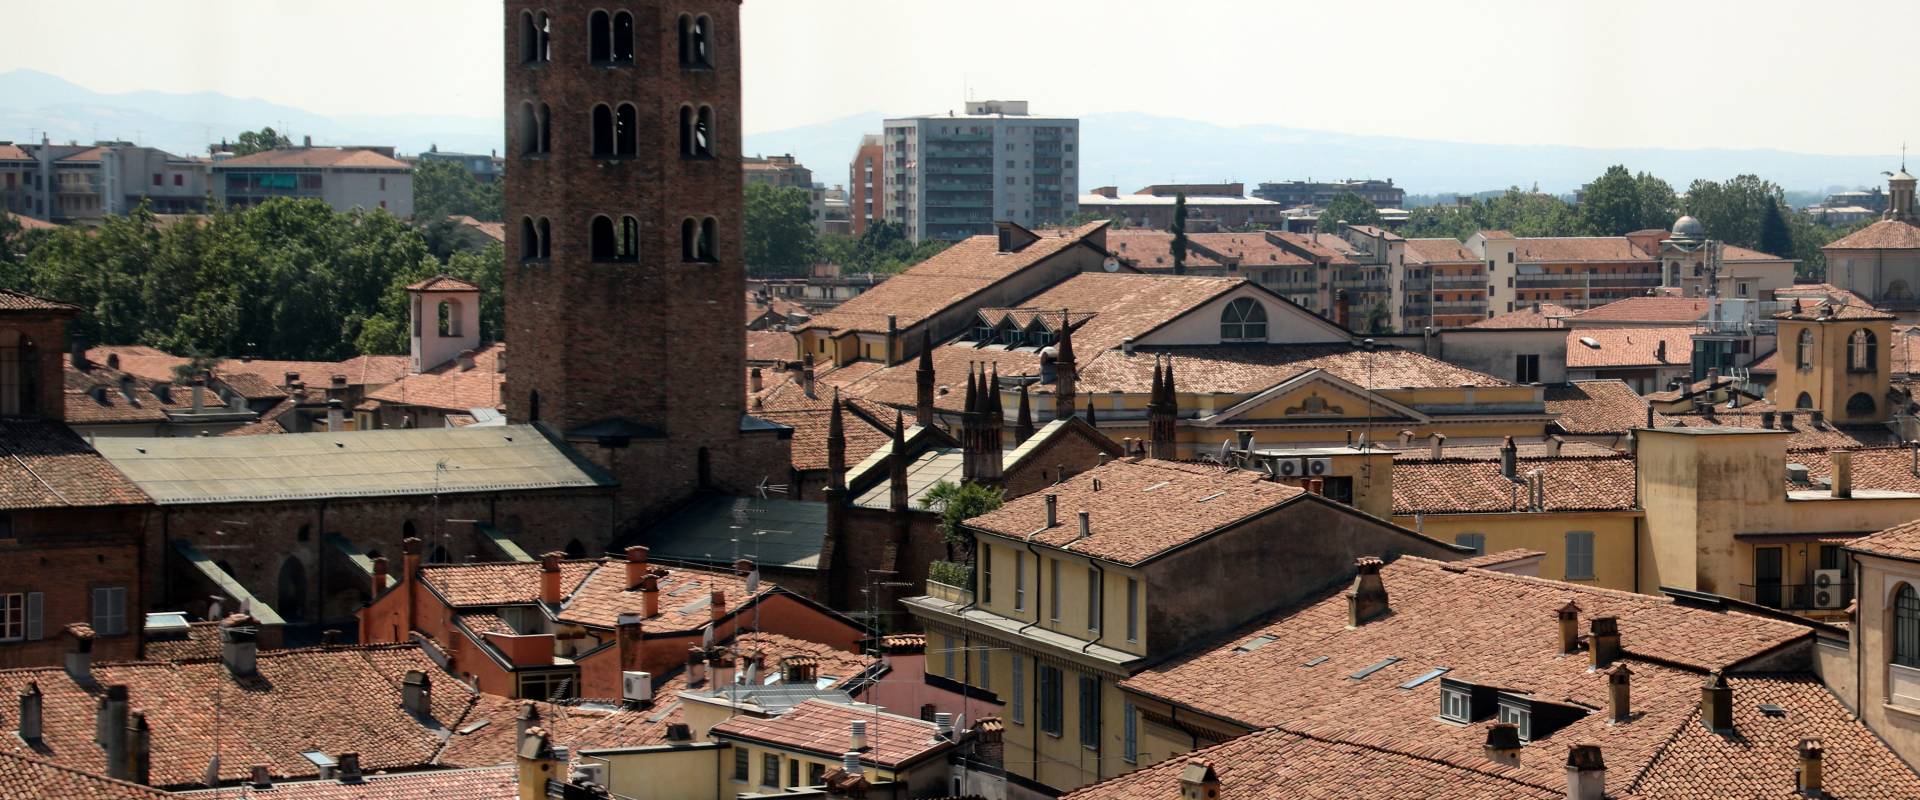 Basilica di Sant'Antonino (Piacenza), campanile 05 foto di Mongolo1984